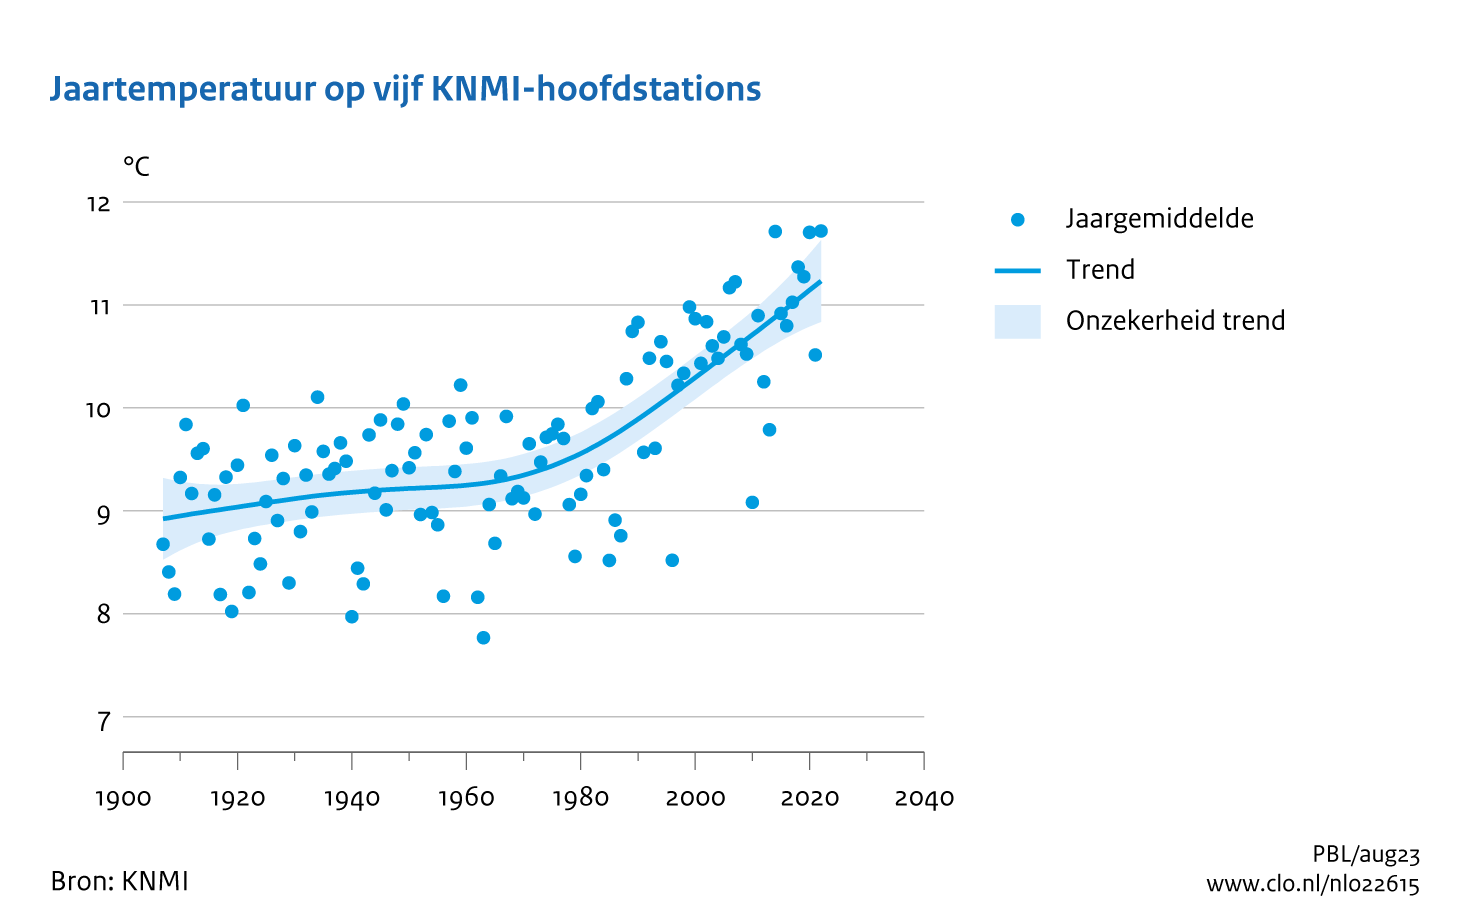 Figuur jaargemiddelde temperatuur midden Nederland. In de rest van de tekst wordt deze figuur uitgebreider uitgelegd.